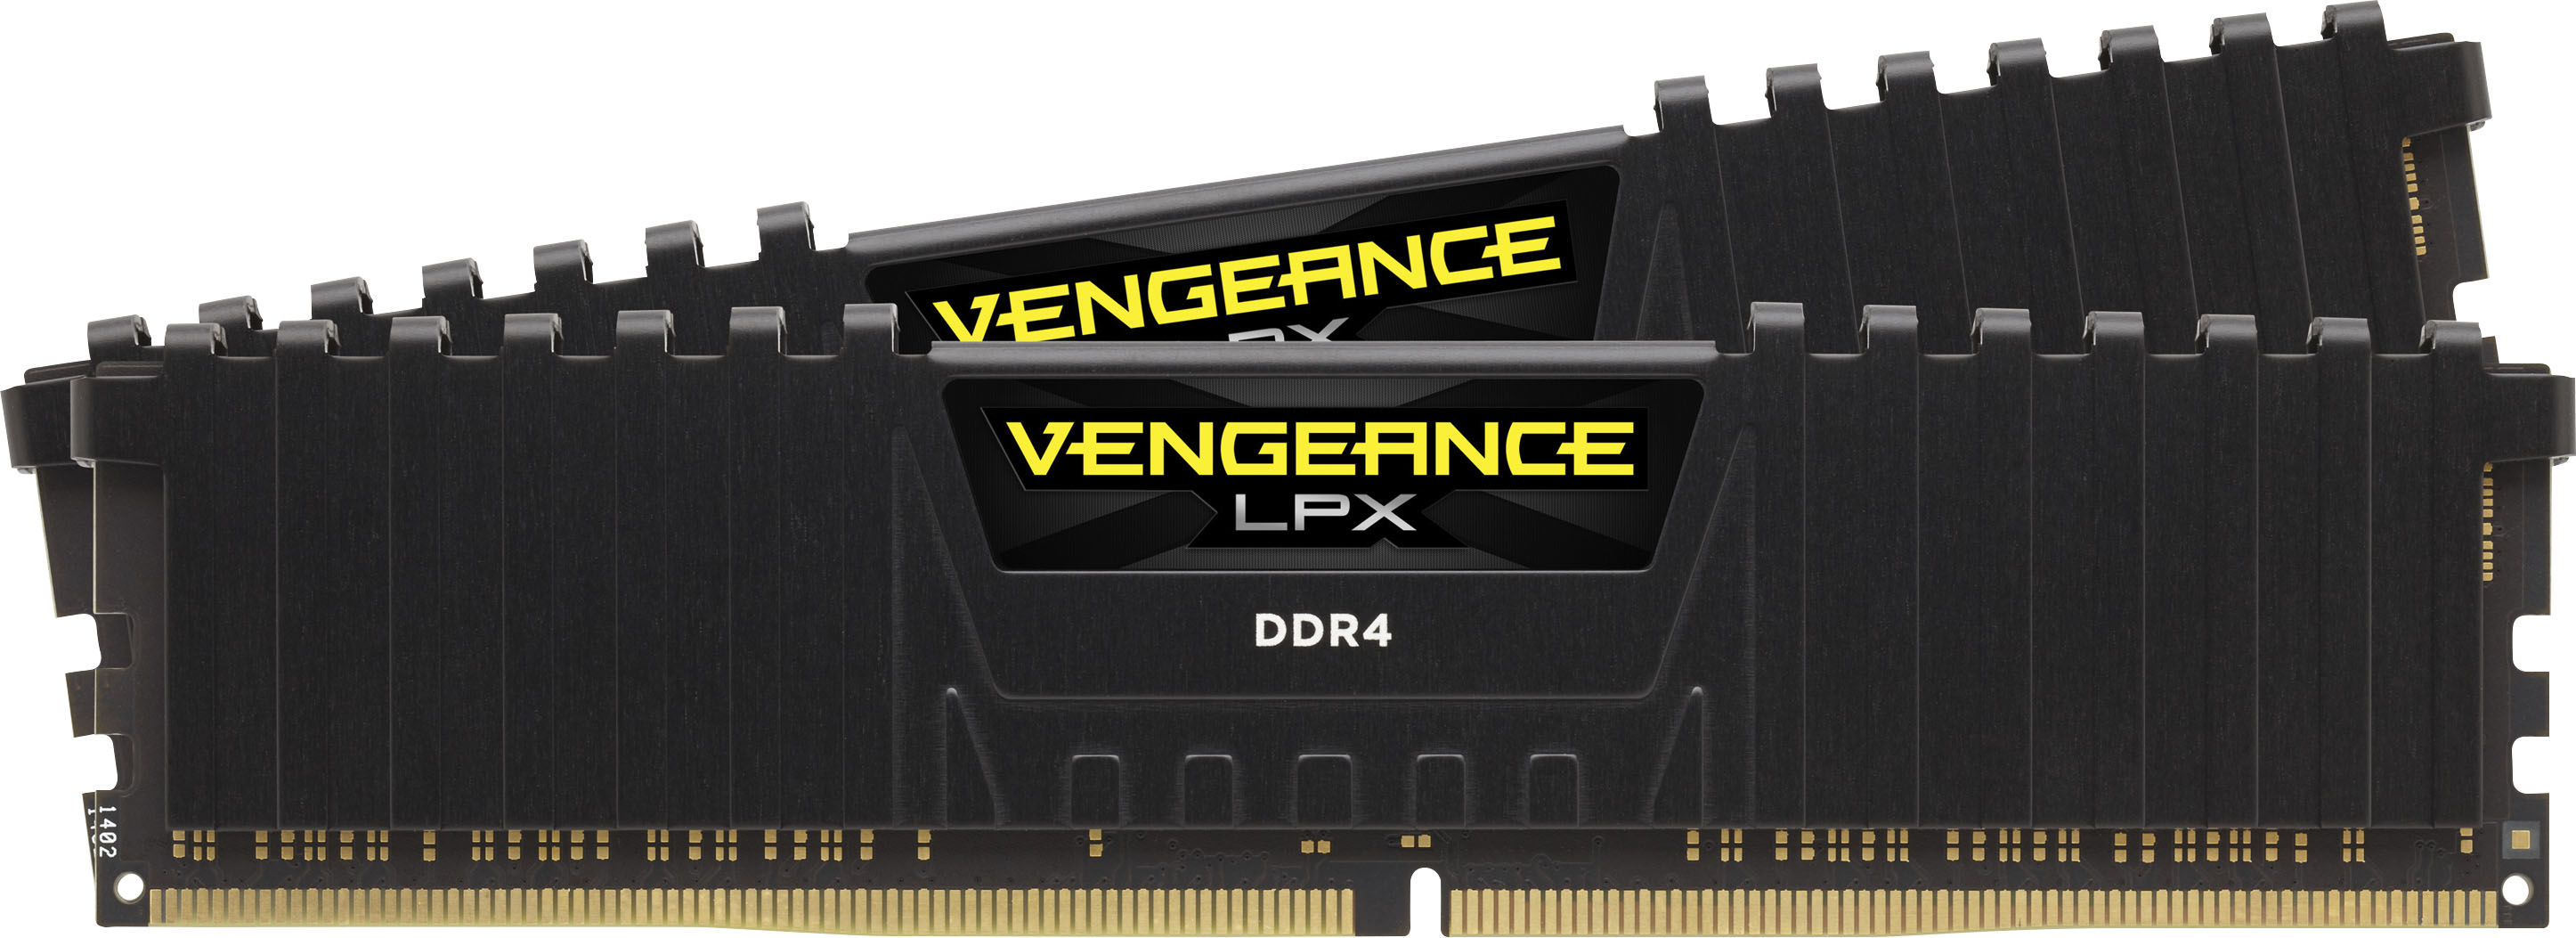 RAM DDR4 3200MHz, 16GB DDR4 3200MHz RAM, memória RAM DDR4 3200MHz 16GB